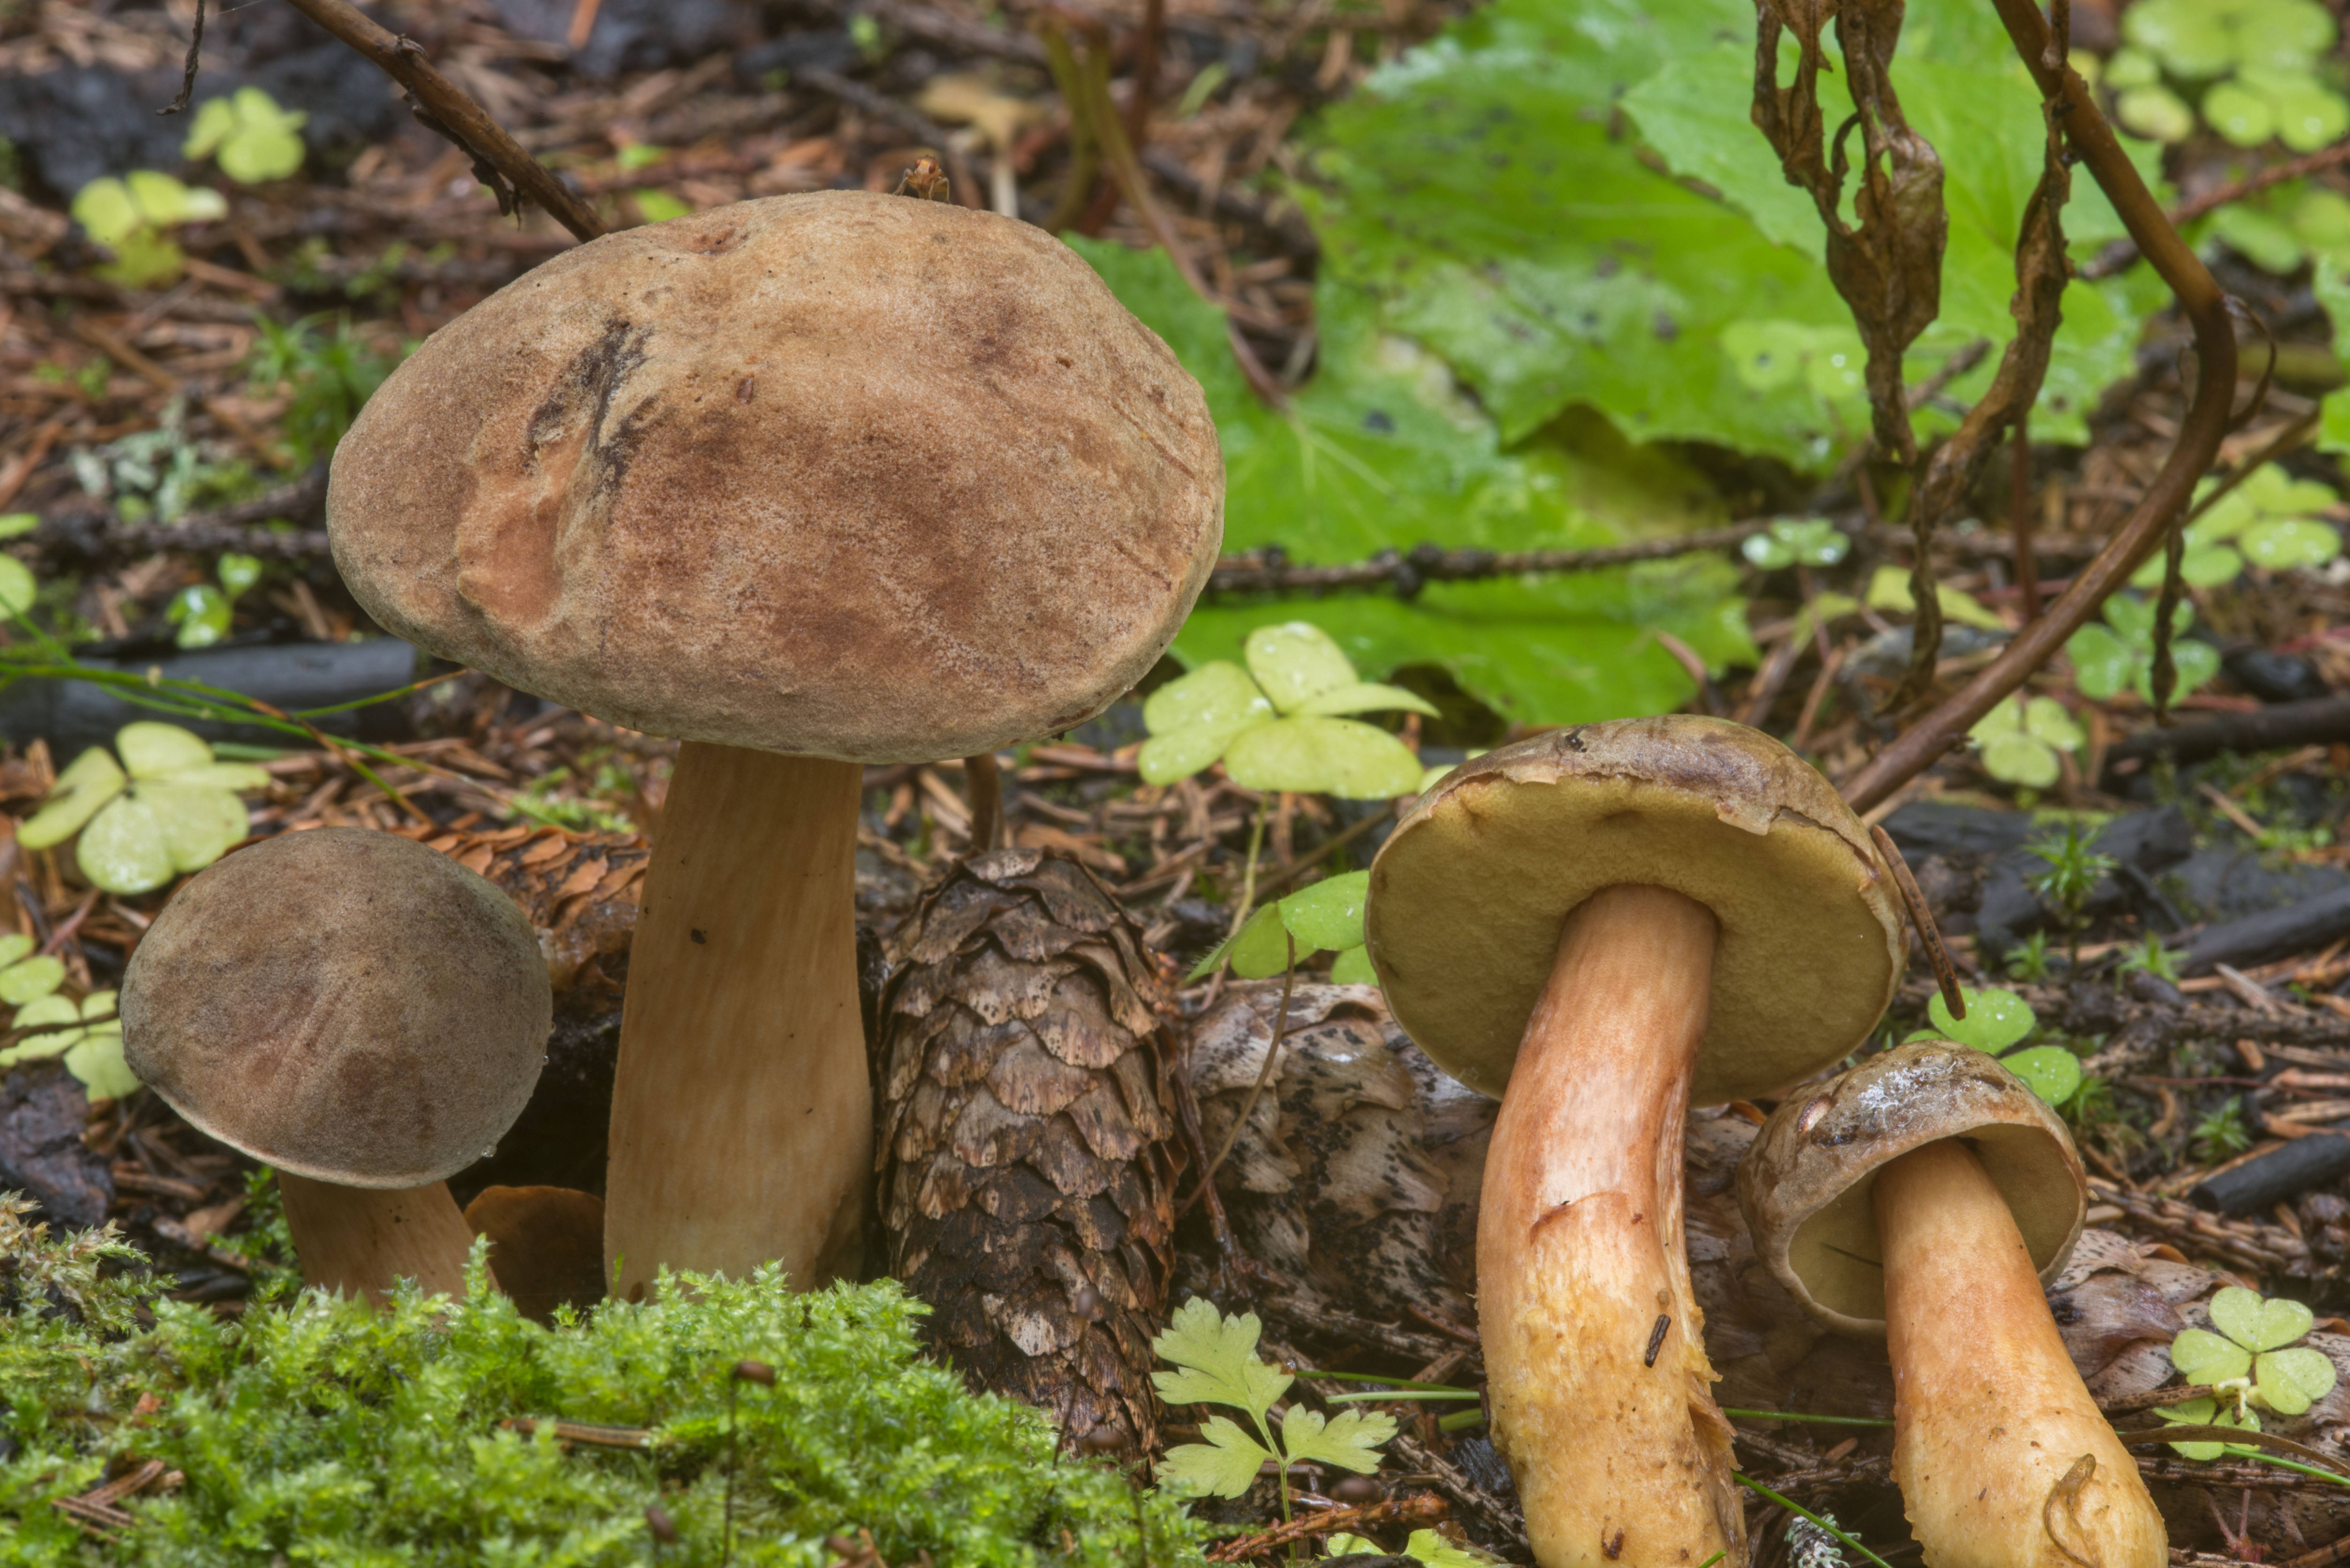 Описание грибов с фото / съедобные грибы, ягоды, травы